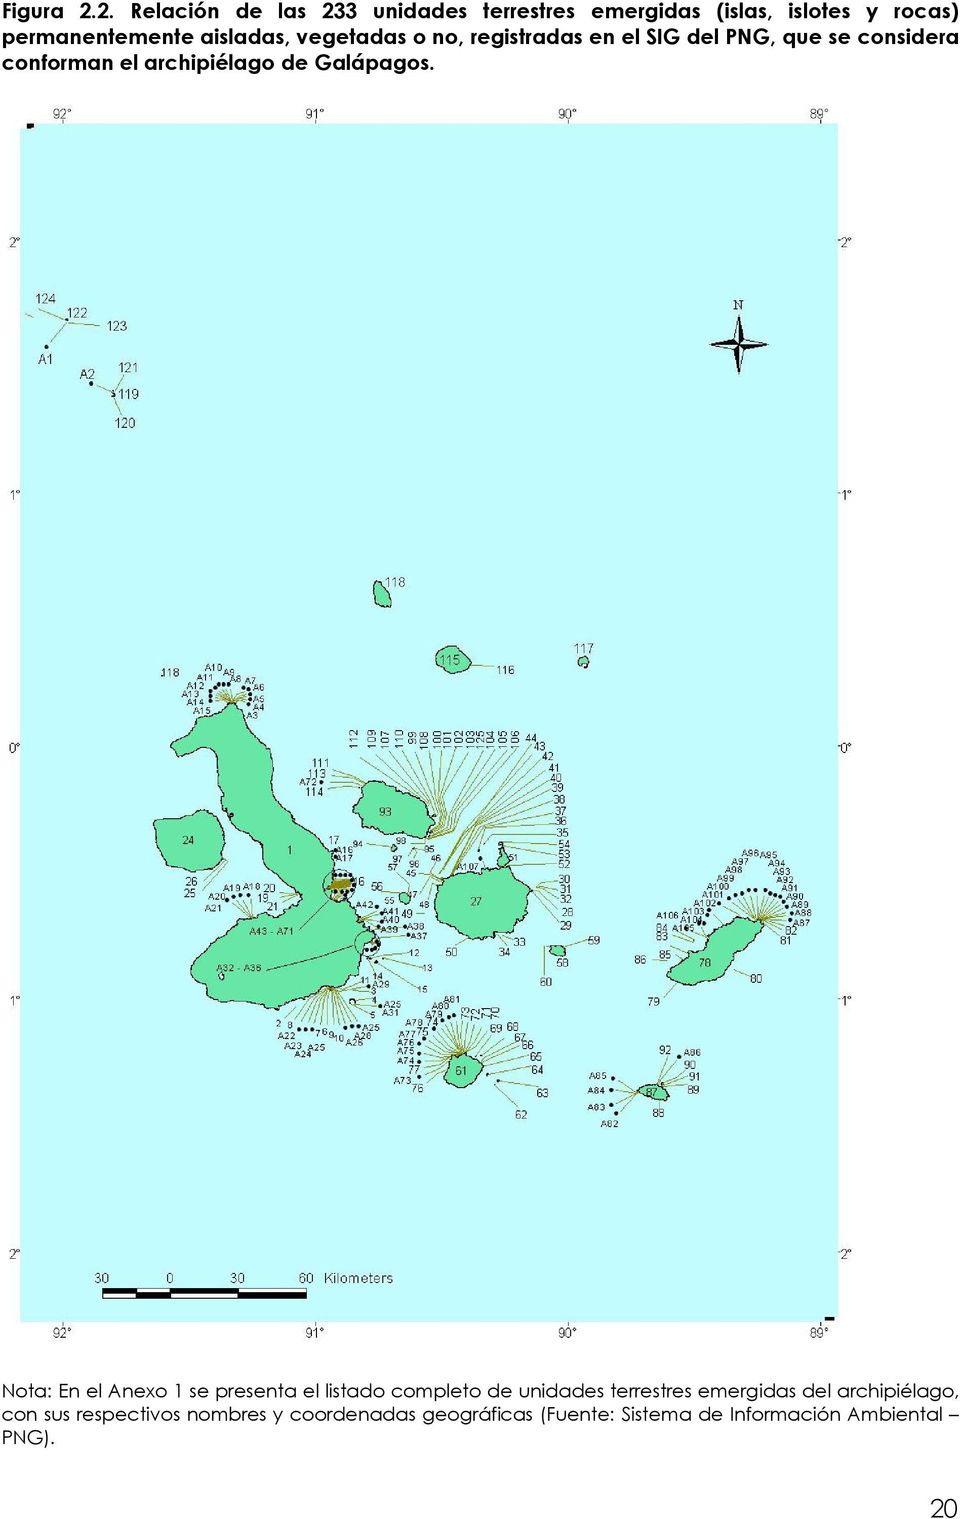 vegetadas o no, registradas en el SIG del PNG, que se considera conforman el archipiélago de Galápagos.